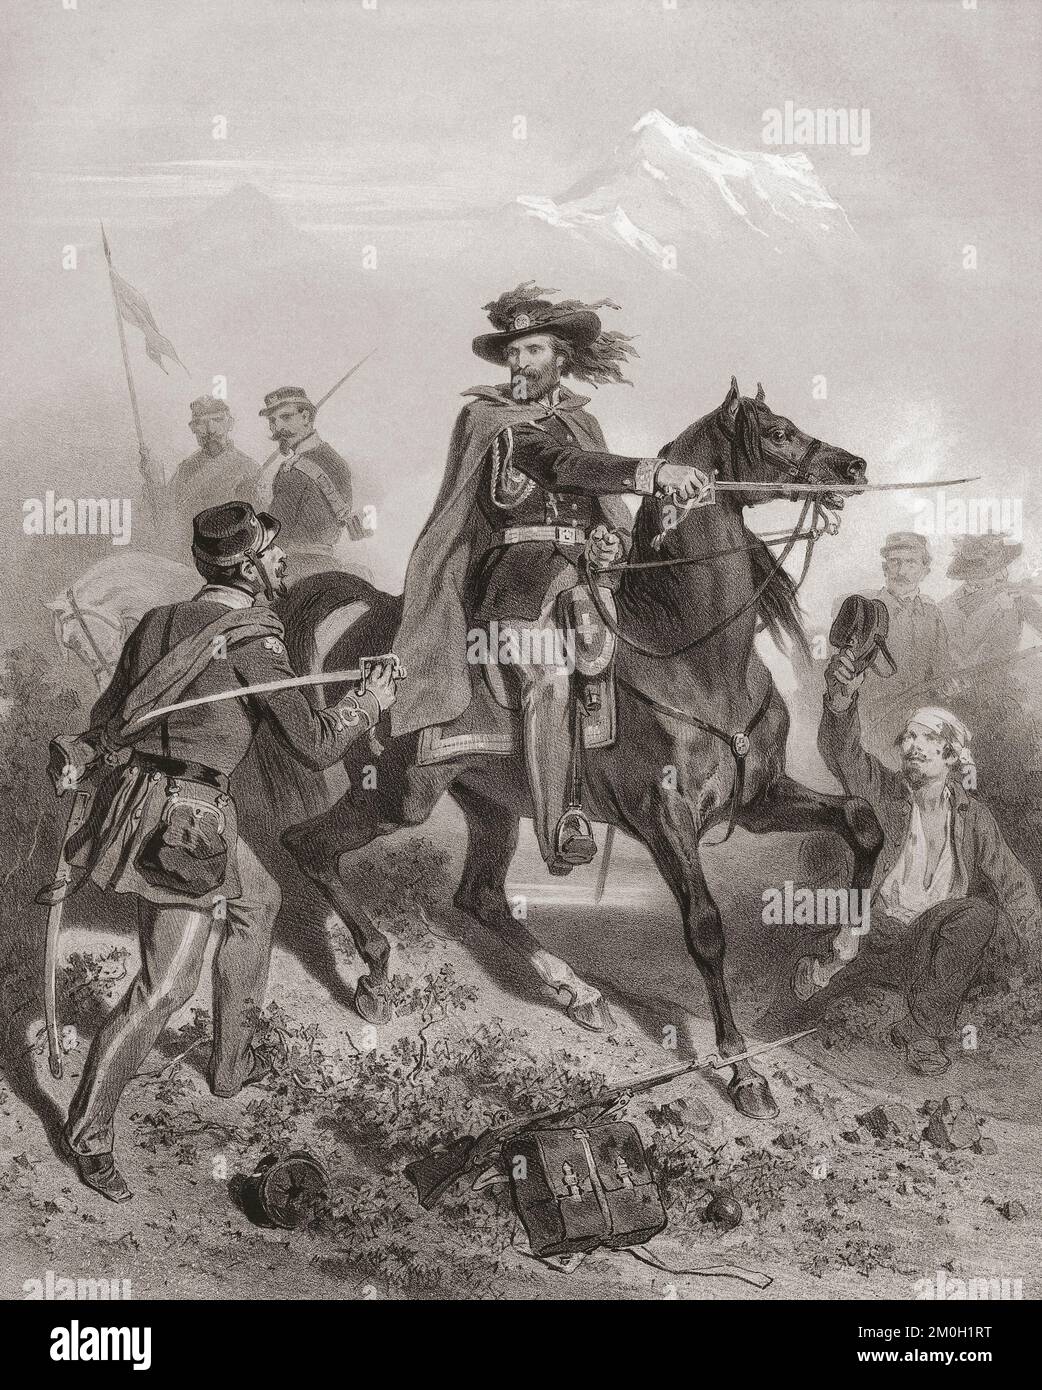 Giuseppe GaribaIdi, 1807 - 1882, führt seine Männer in der Schlacht von Varese, 26. Mai 1859 während des Zweiten italienischen Unabhängigkeitskriegs. Nach einem zeitgenössischen Werk von Adolphe Jean Baptiste Bayot. Stockfoto